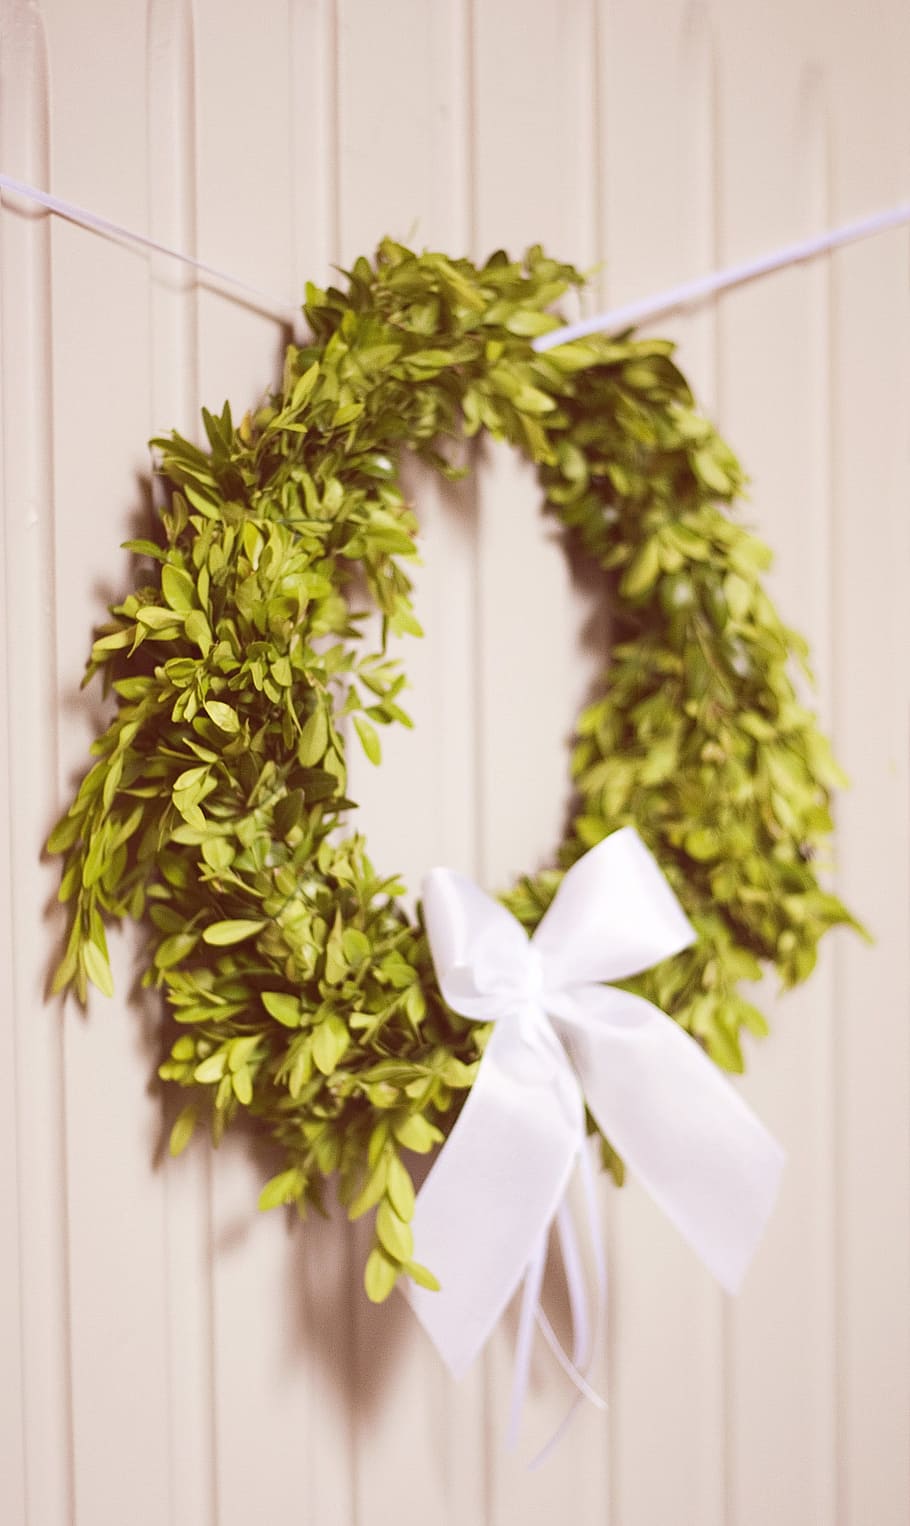 green door wreath hanging on white wall, arrangement, solemnly